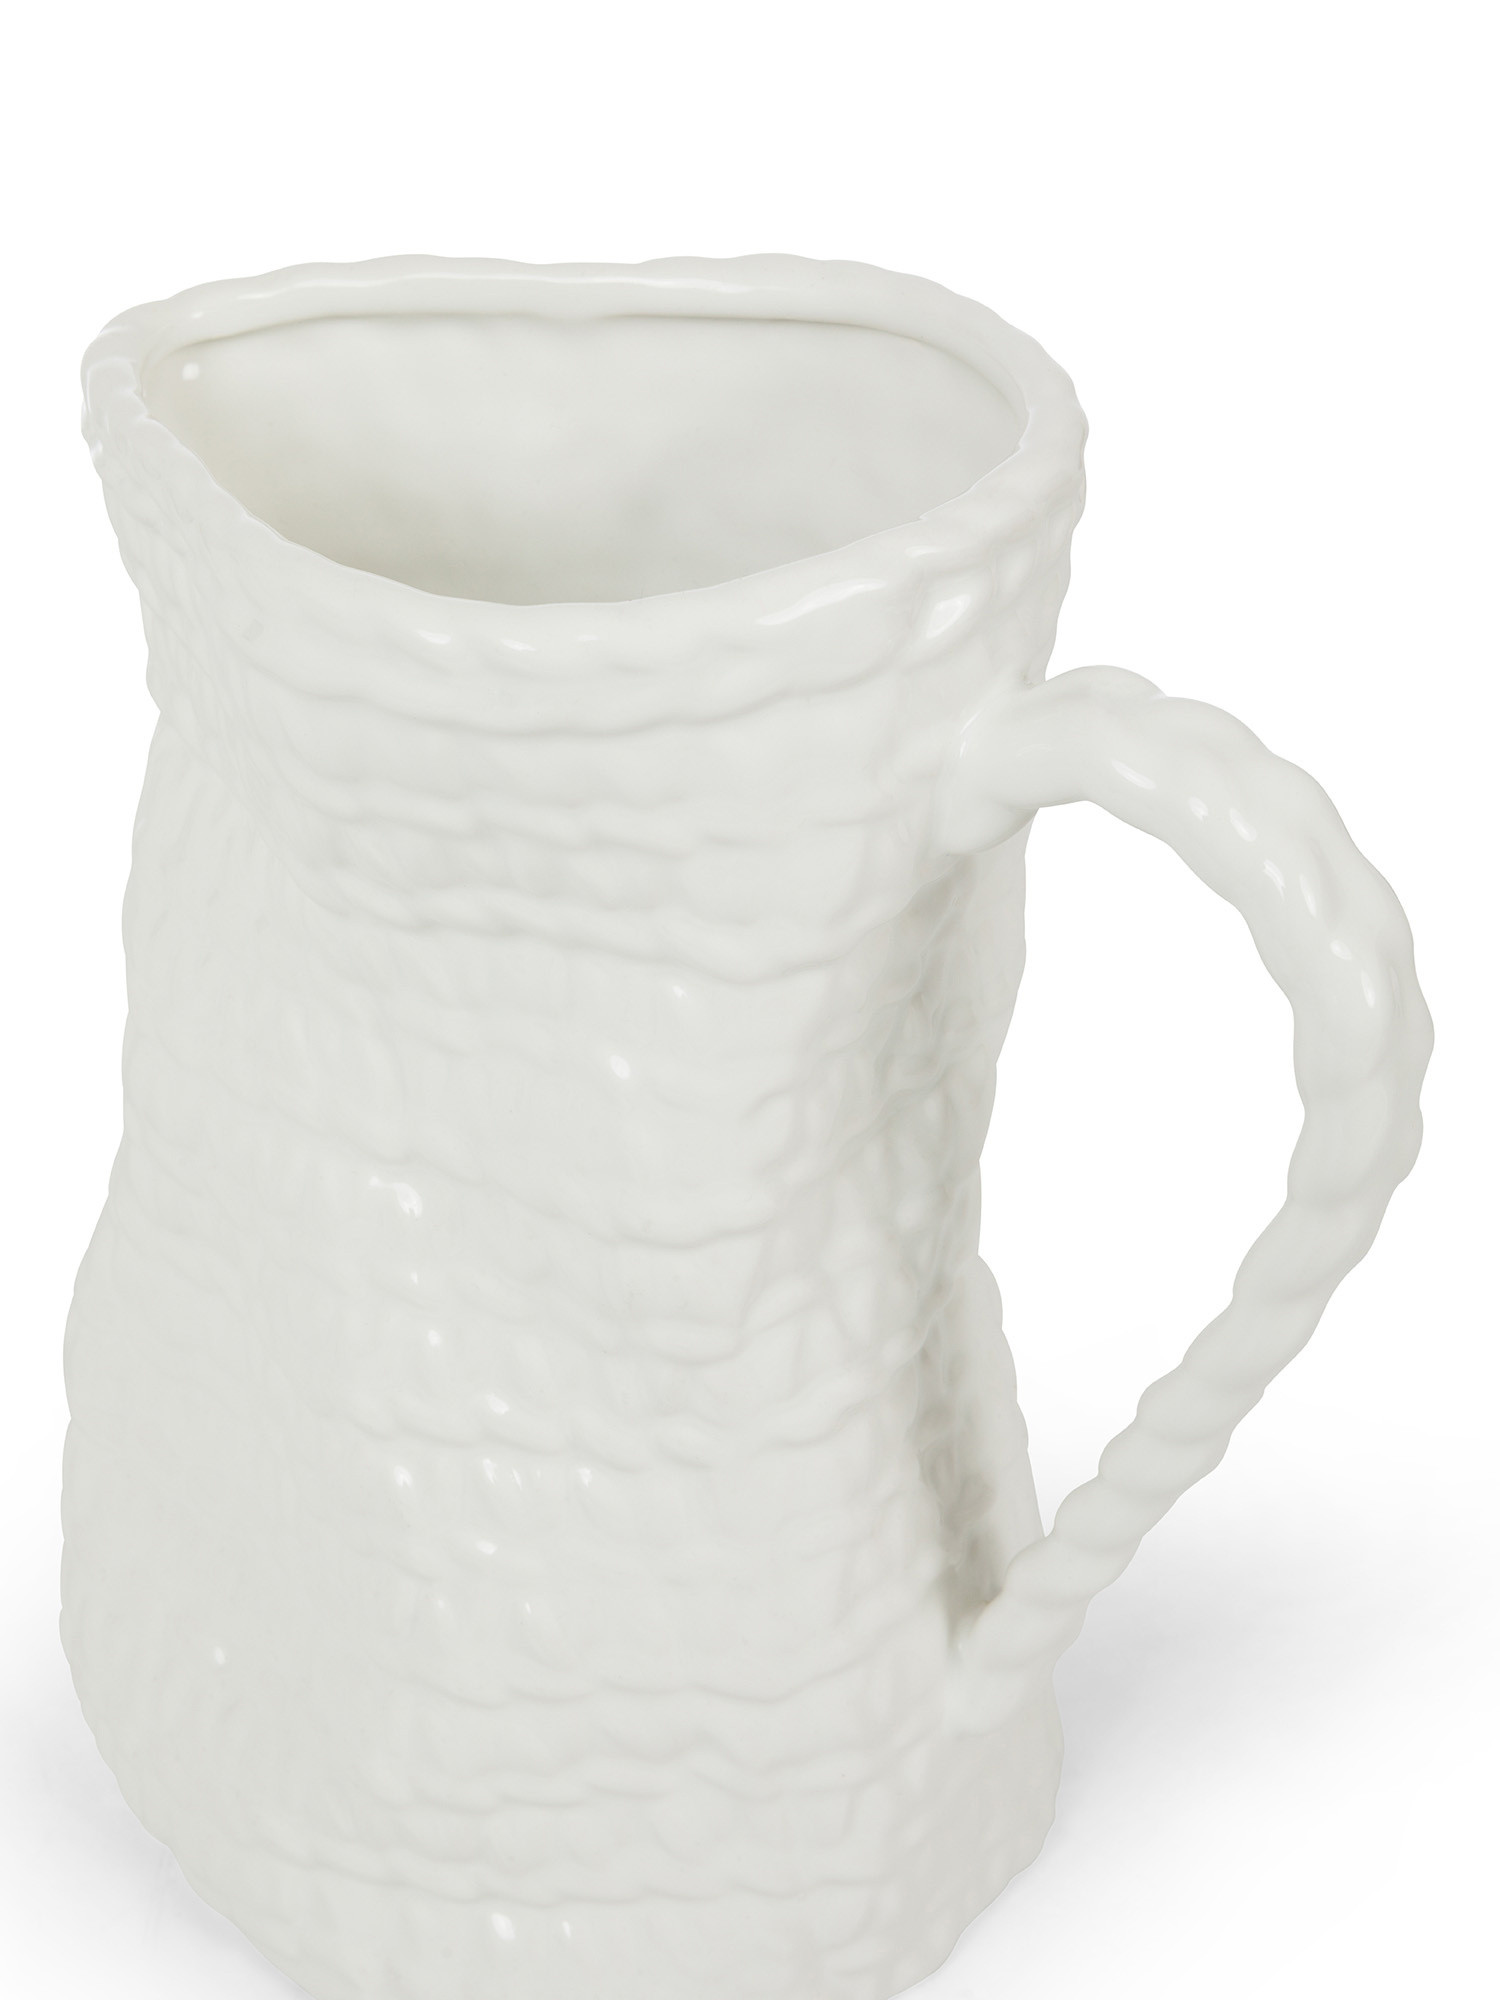 Brocca decorativa in ceramica, Bianco, large image number 1